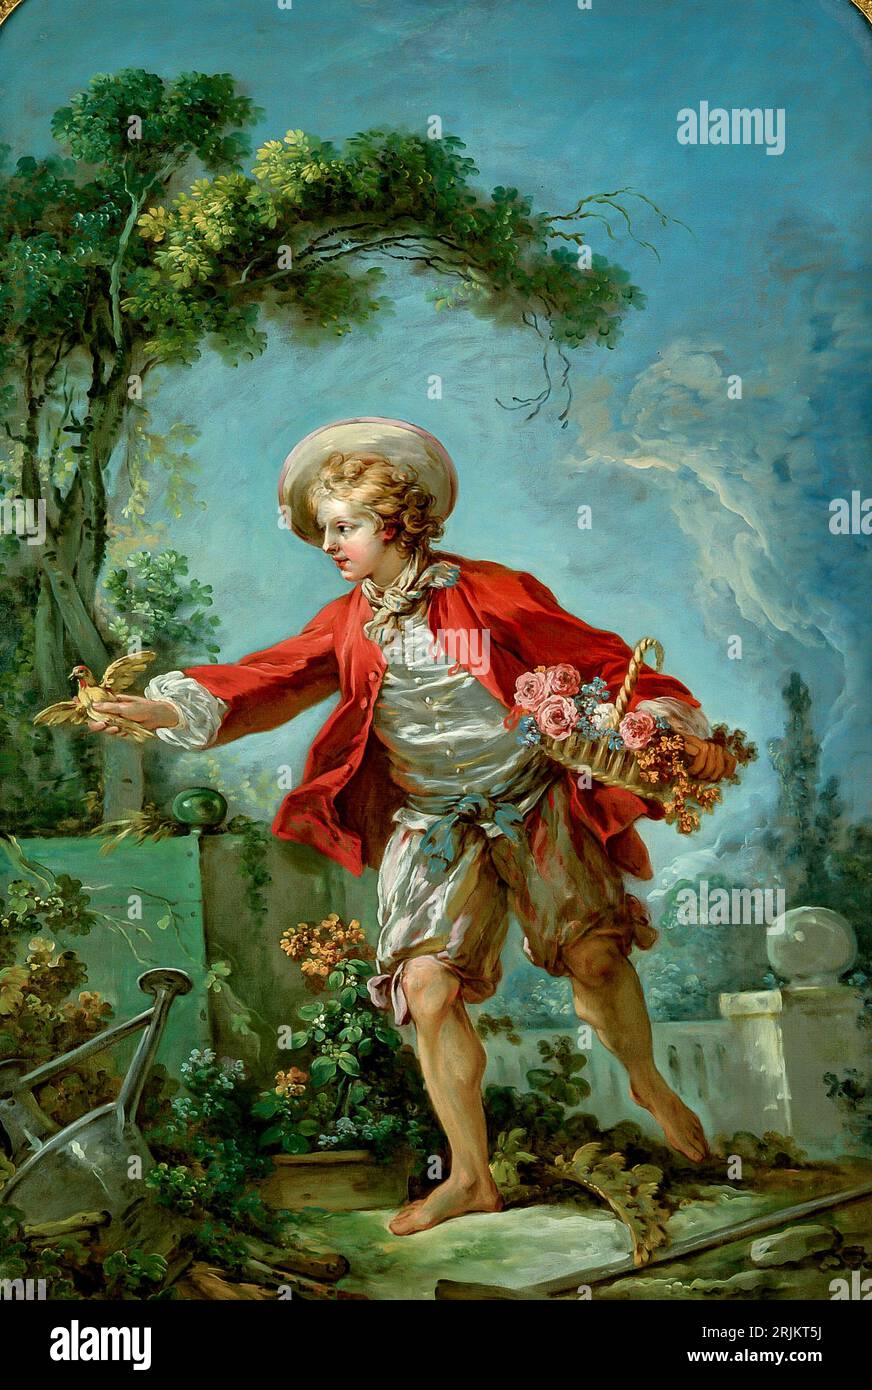 Il giardiniere, tra il 1754 e il 1755. Jean Honoré Fragonard, francese, 1732-1806. Olio su tela. Nel Gardener, il pittore francese Jean-Honoré Fragonard Foto Stock